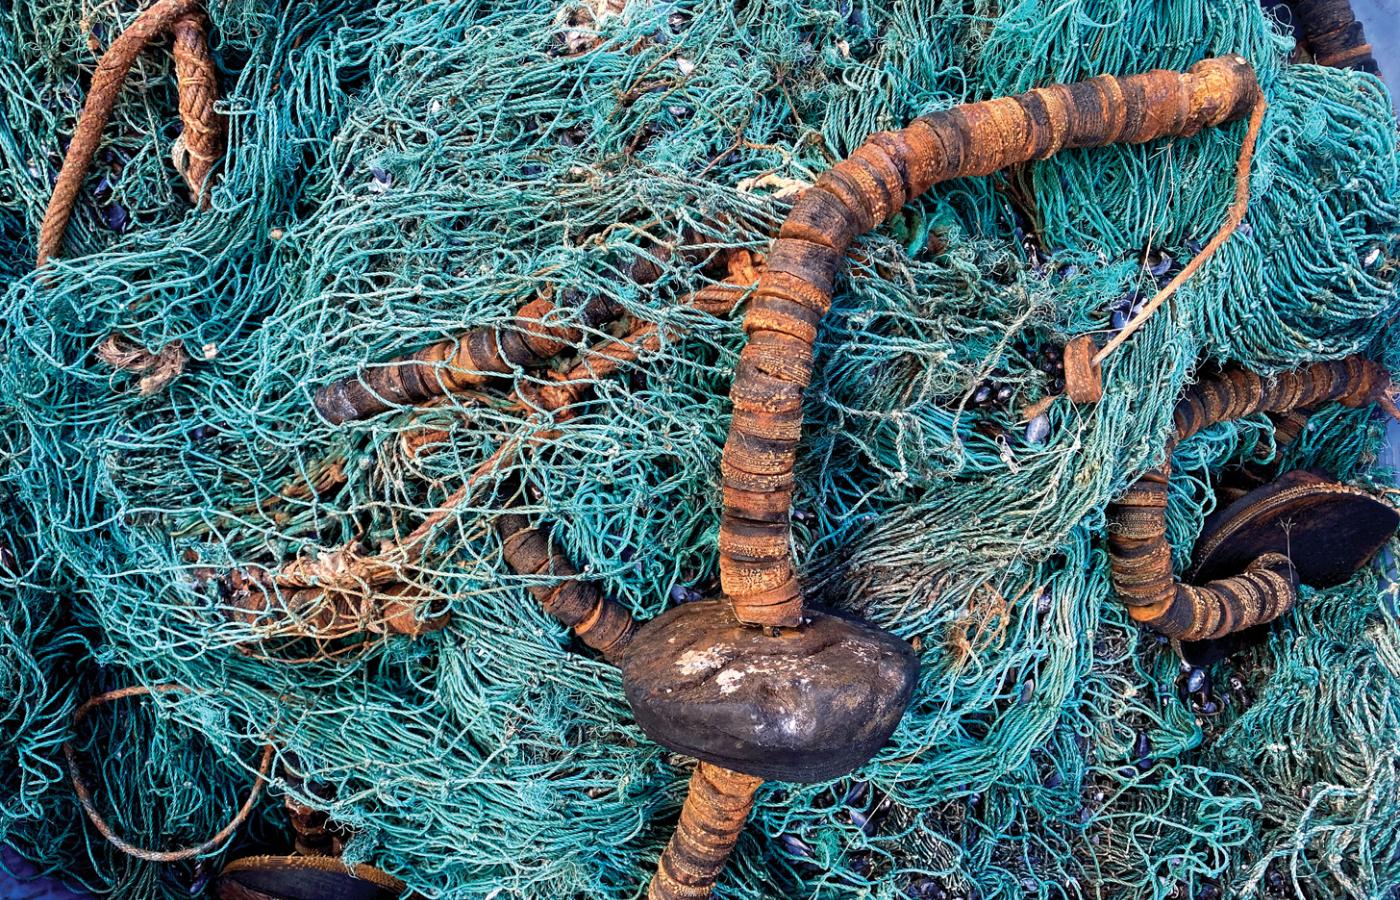 Zagubione lub porzucone w Bałtyku sieci rybackie stanowią ogromne zagrożenie dla ekosystemu. (Fot. materiały prasowe)